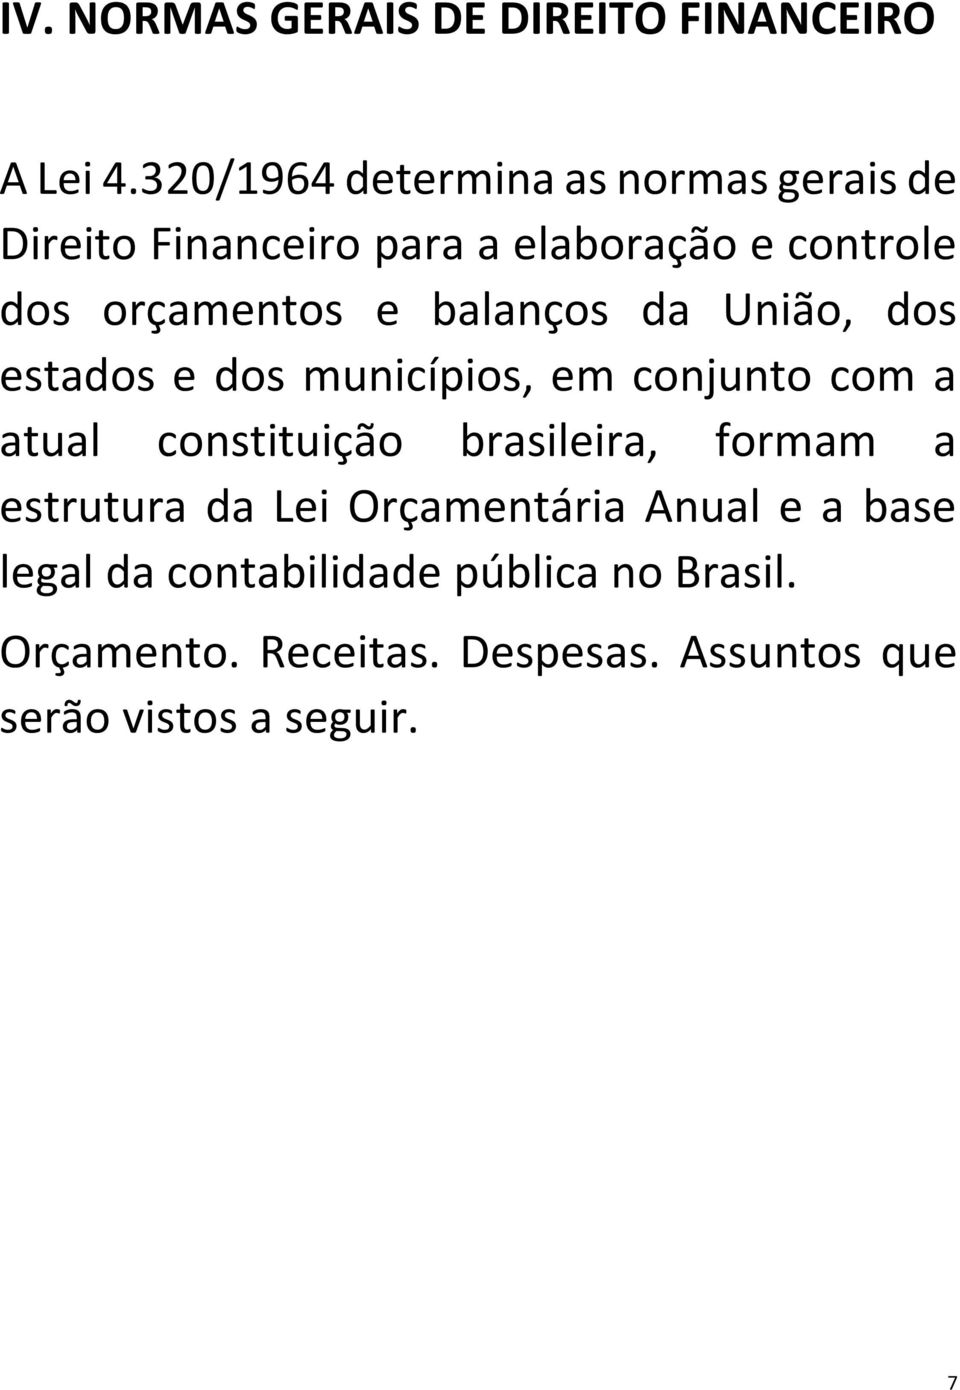 balanços da União, dos estados e dos municípios, em conjunto com a atual constituição brasileira,